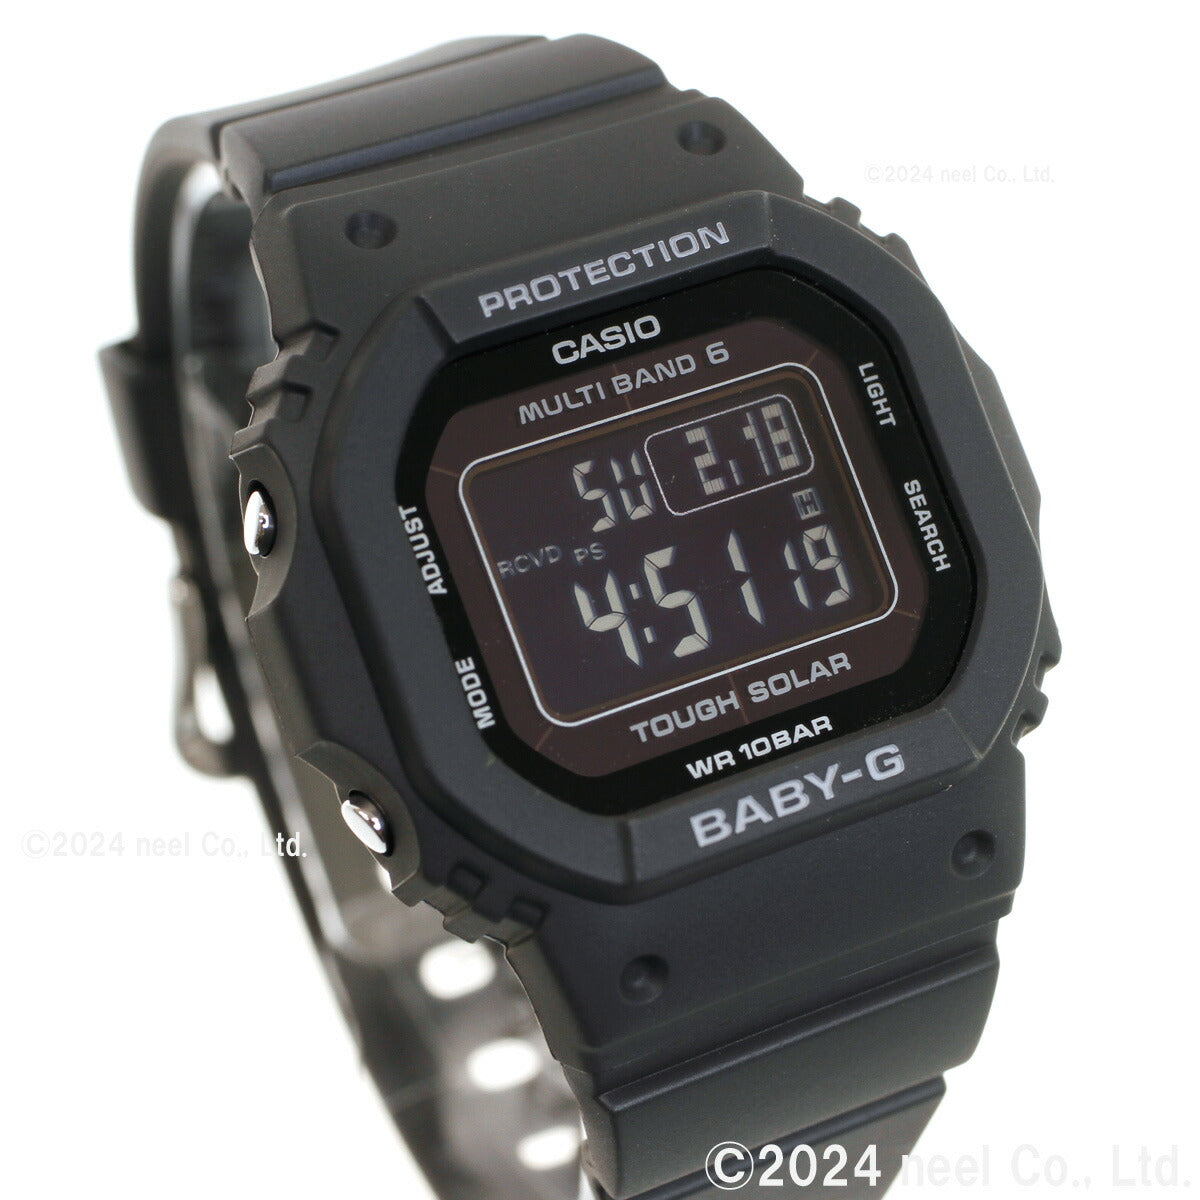 BABY-G カシオ ベビーG レディース 電波 ソーラー 腕時計 タフソーラー BGD-5650-1CJF オールブラック